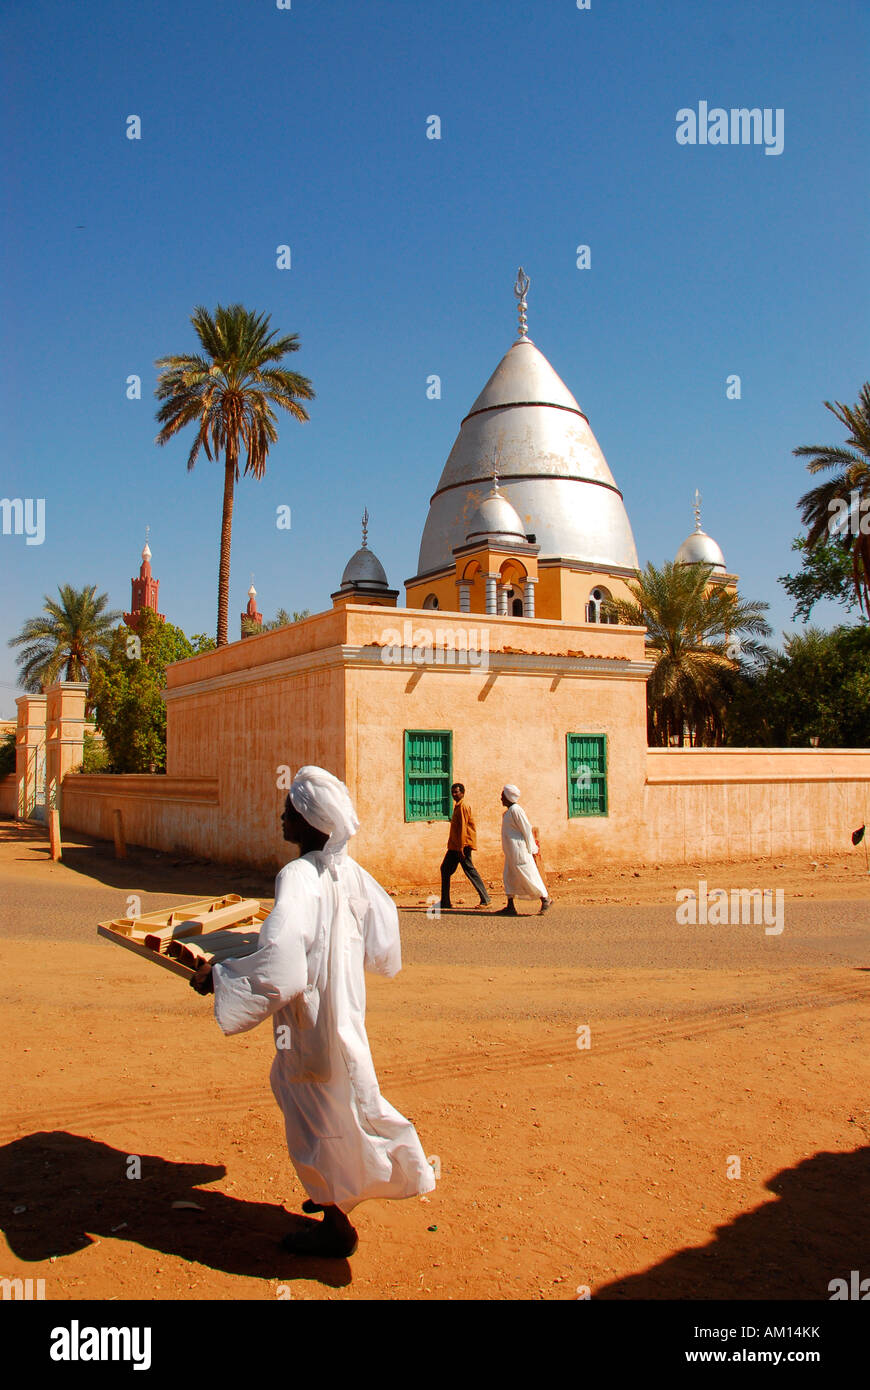 Mahdi's tomb, Karthoum, Sudan Stock Photo